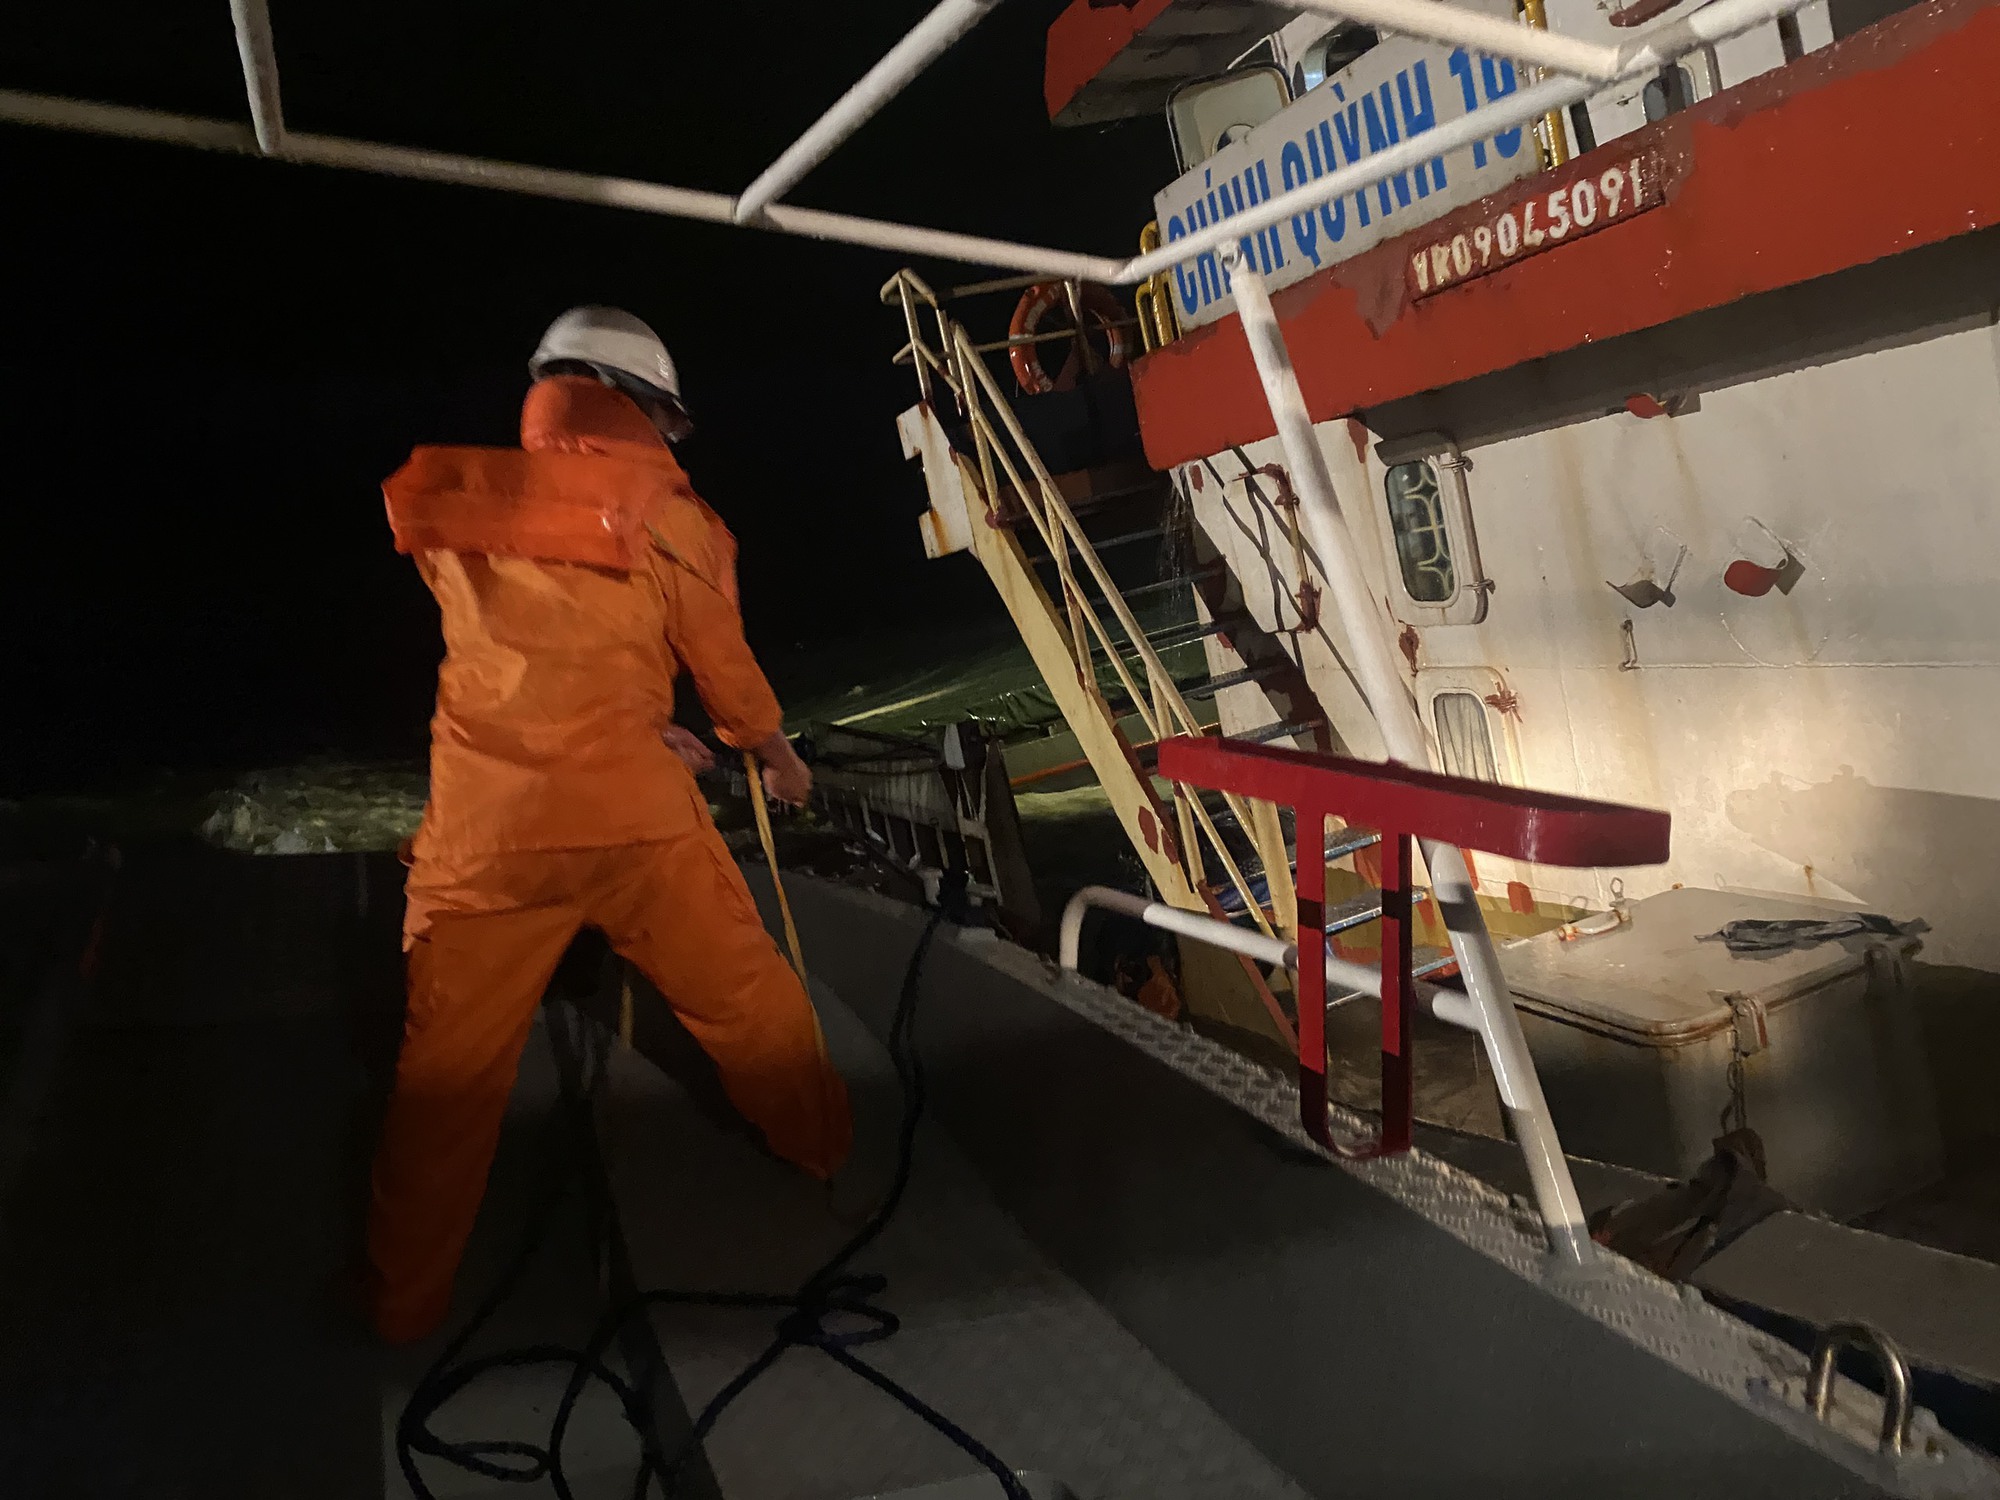 Video hiện trường cứu 9 thuyền viên tàu chở 3.400 tấn đá nguy cơ lật trên biển Đà Nẵng- Ảnh 1.